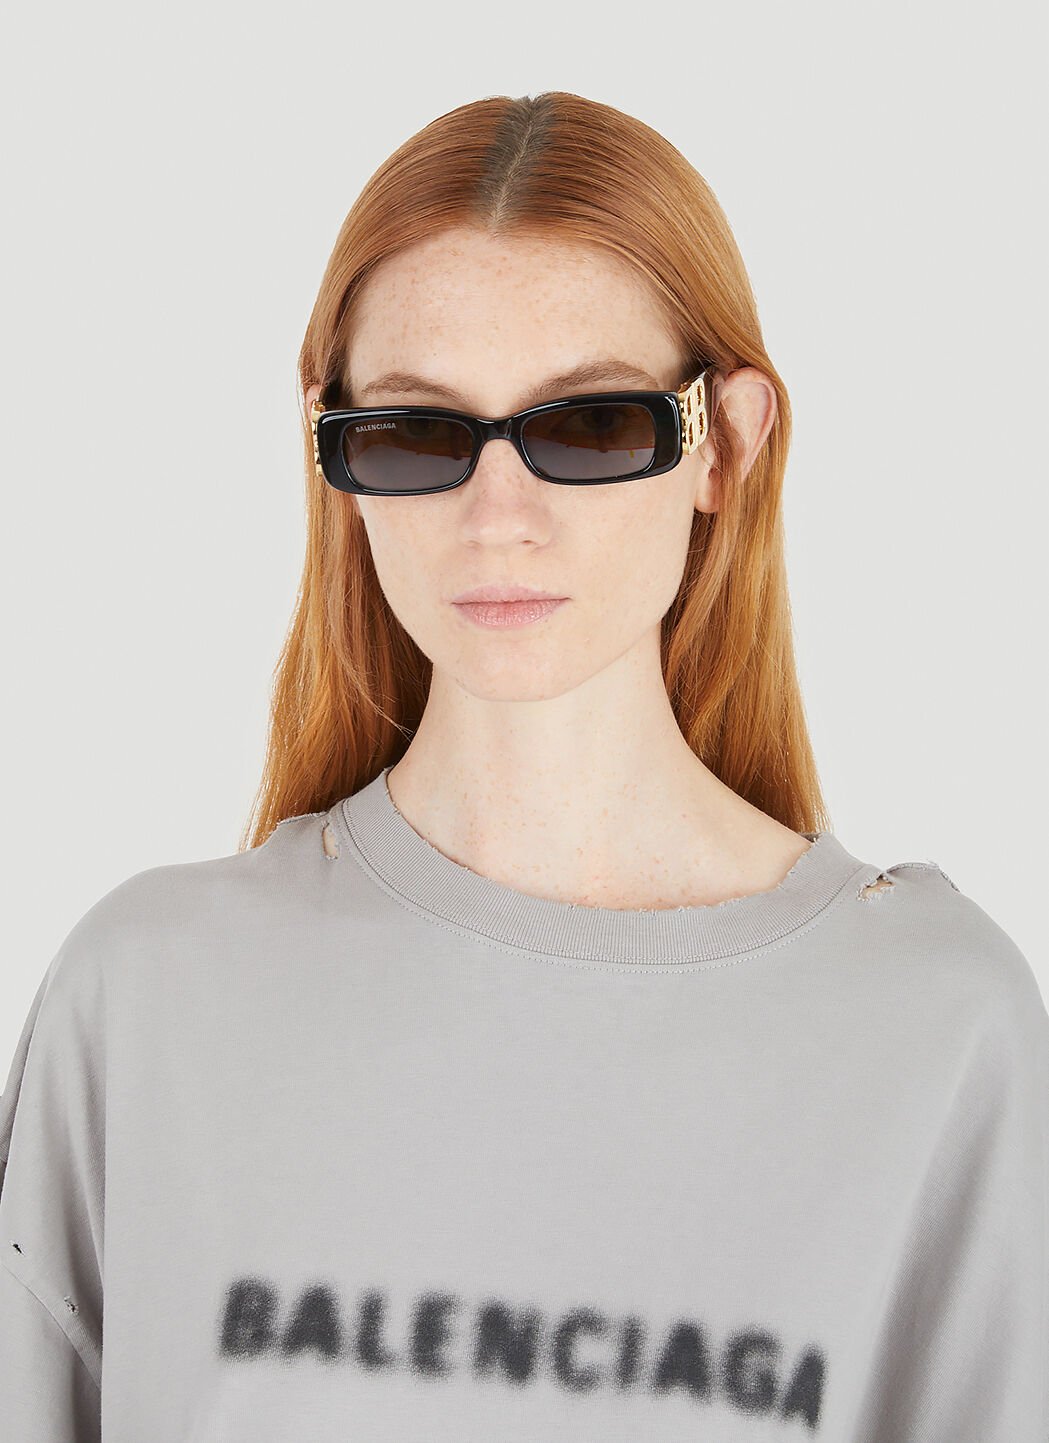 Balenciaga SpringSummer Sunglasses Collection  Pretavoir